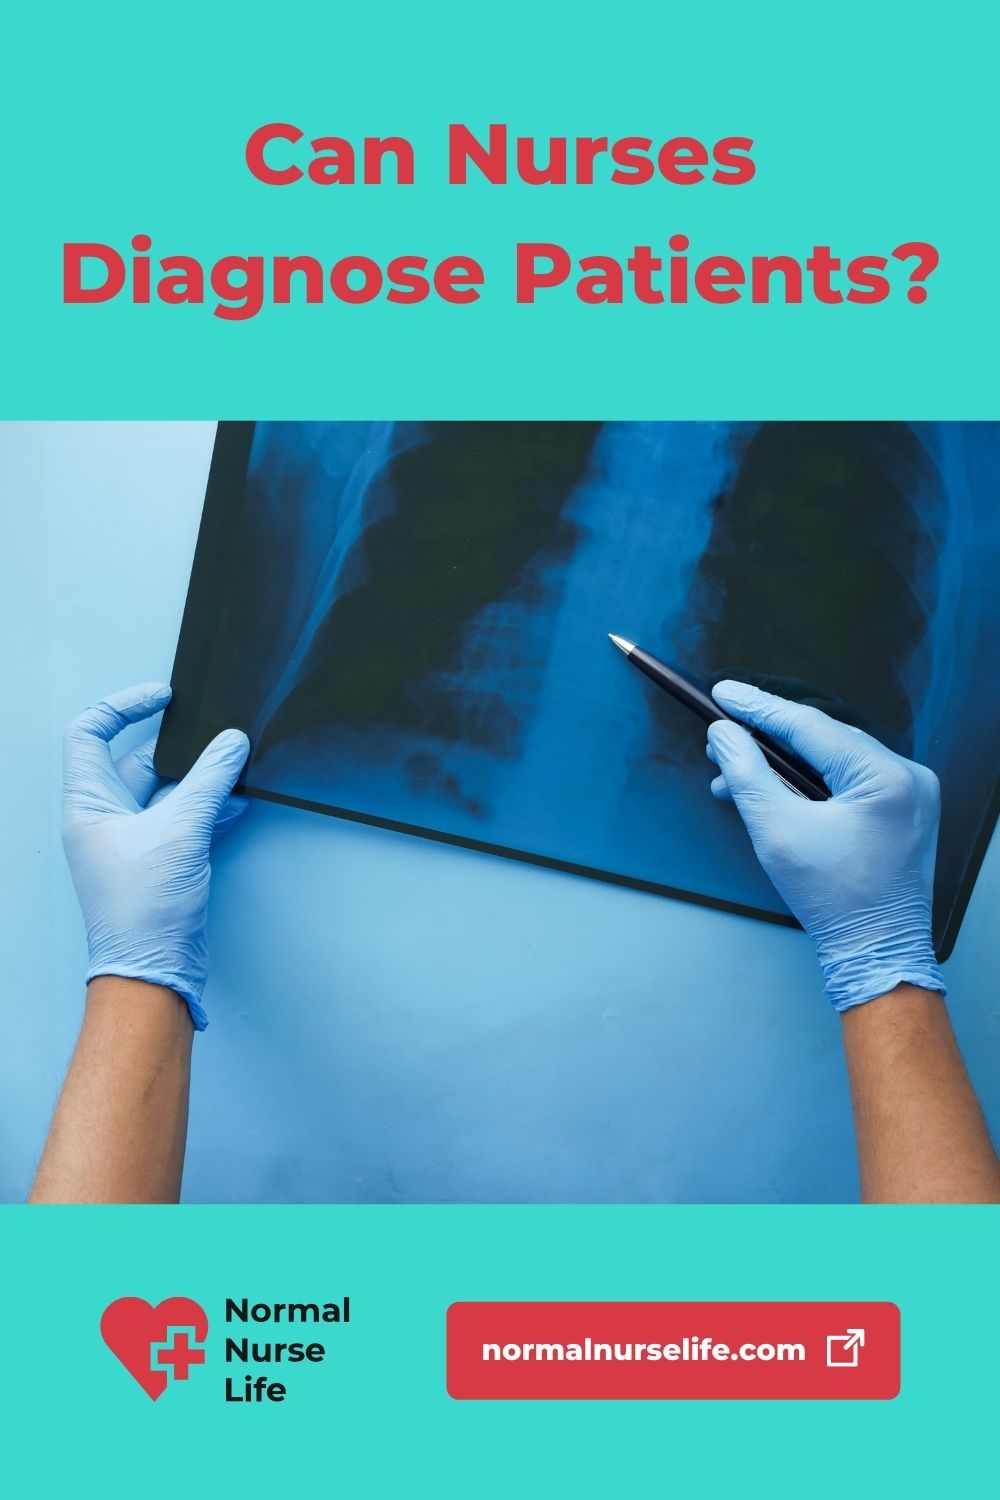 Can nurses diagnose patients?